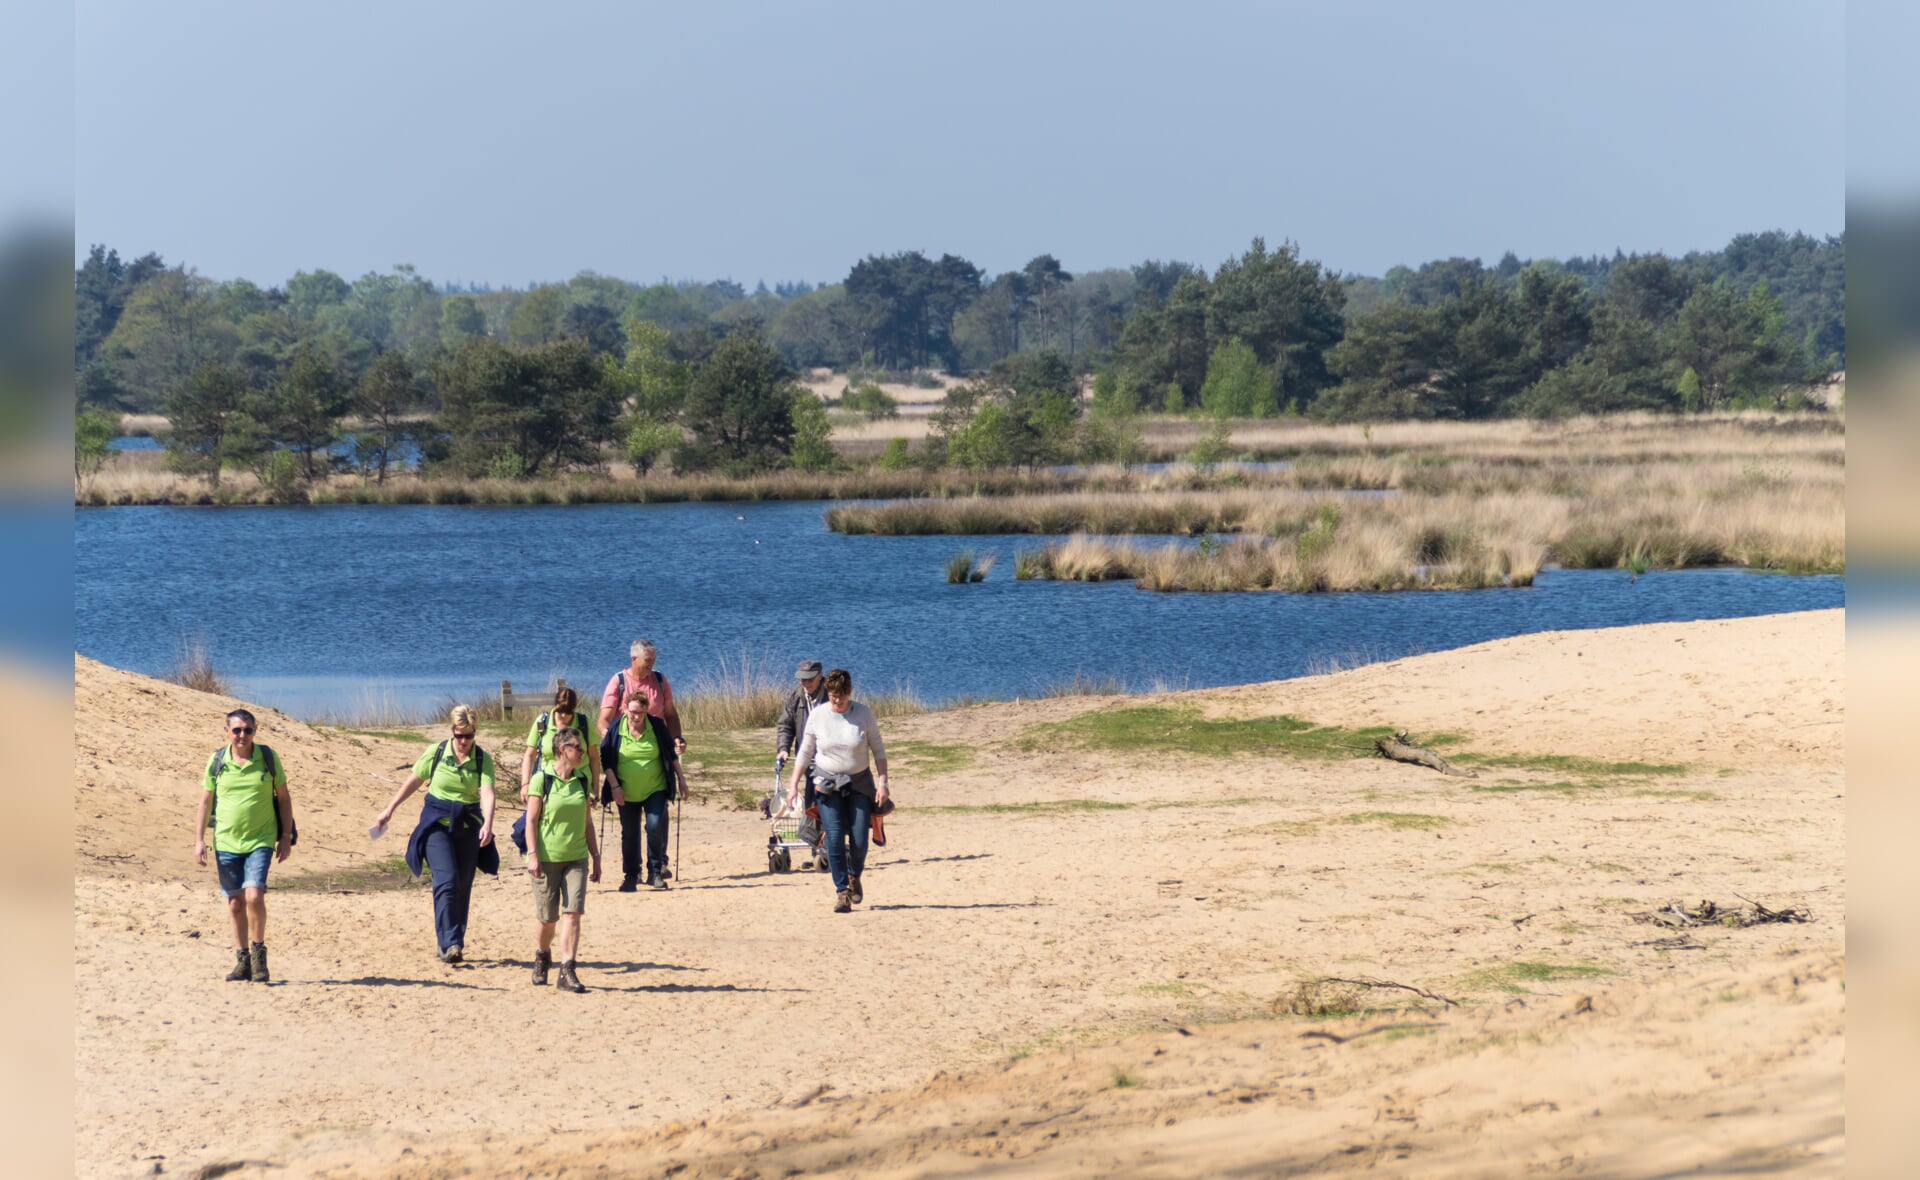 Natuurgebied Kampina tussen Boxtel en Oisterwijk is een populaire wandelomgeving in de regio. (Foto: Daisy Renders)